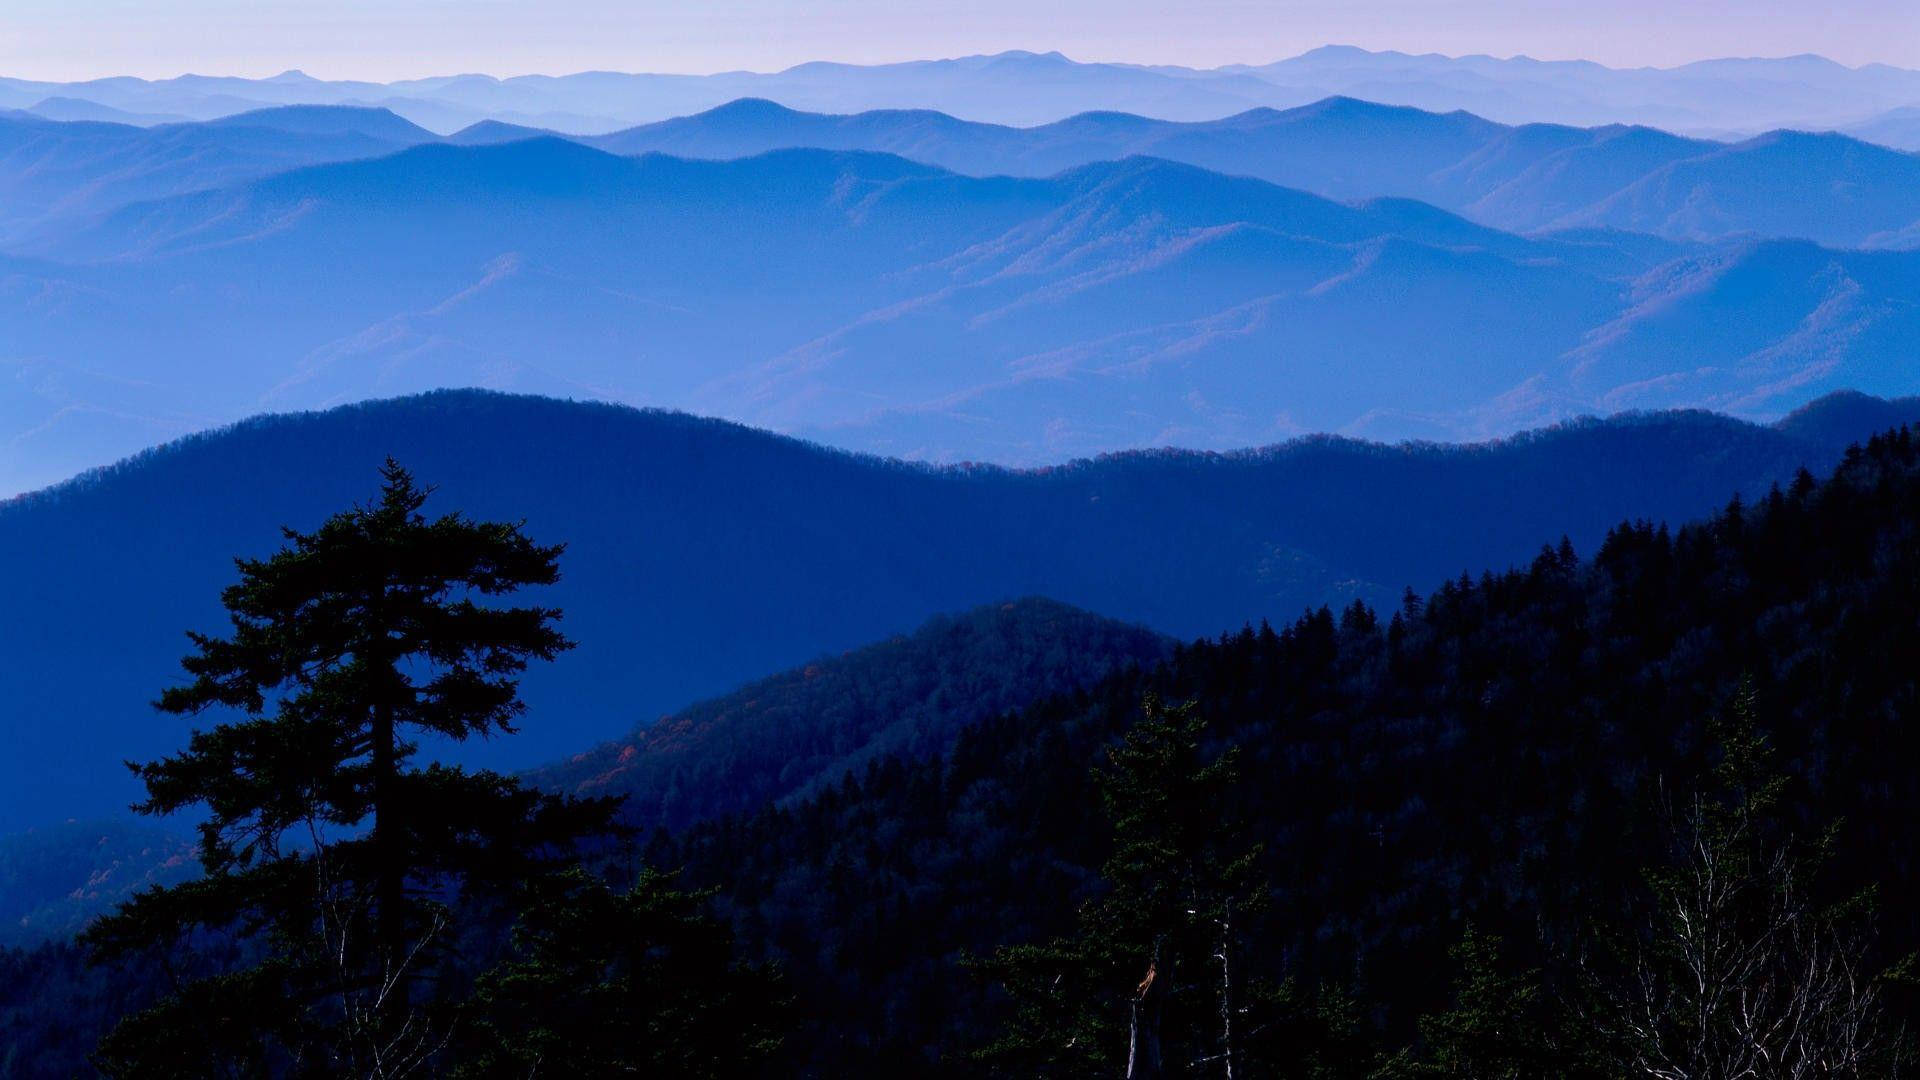 Machensie Eine Reise Durch Die Majestätische Landschaft Der Great Smoky Mountains. Wallpaper